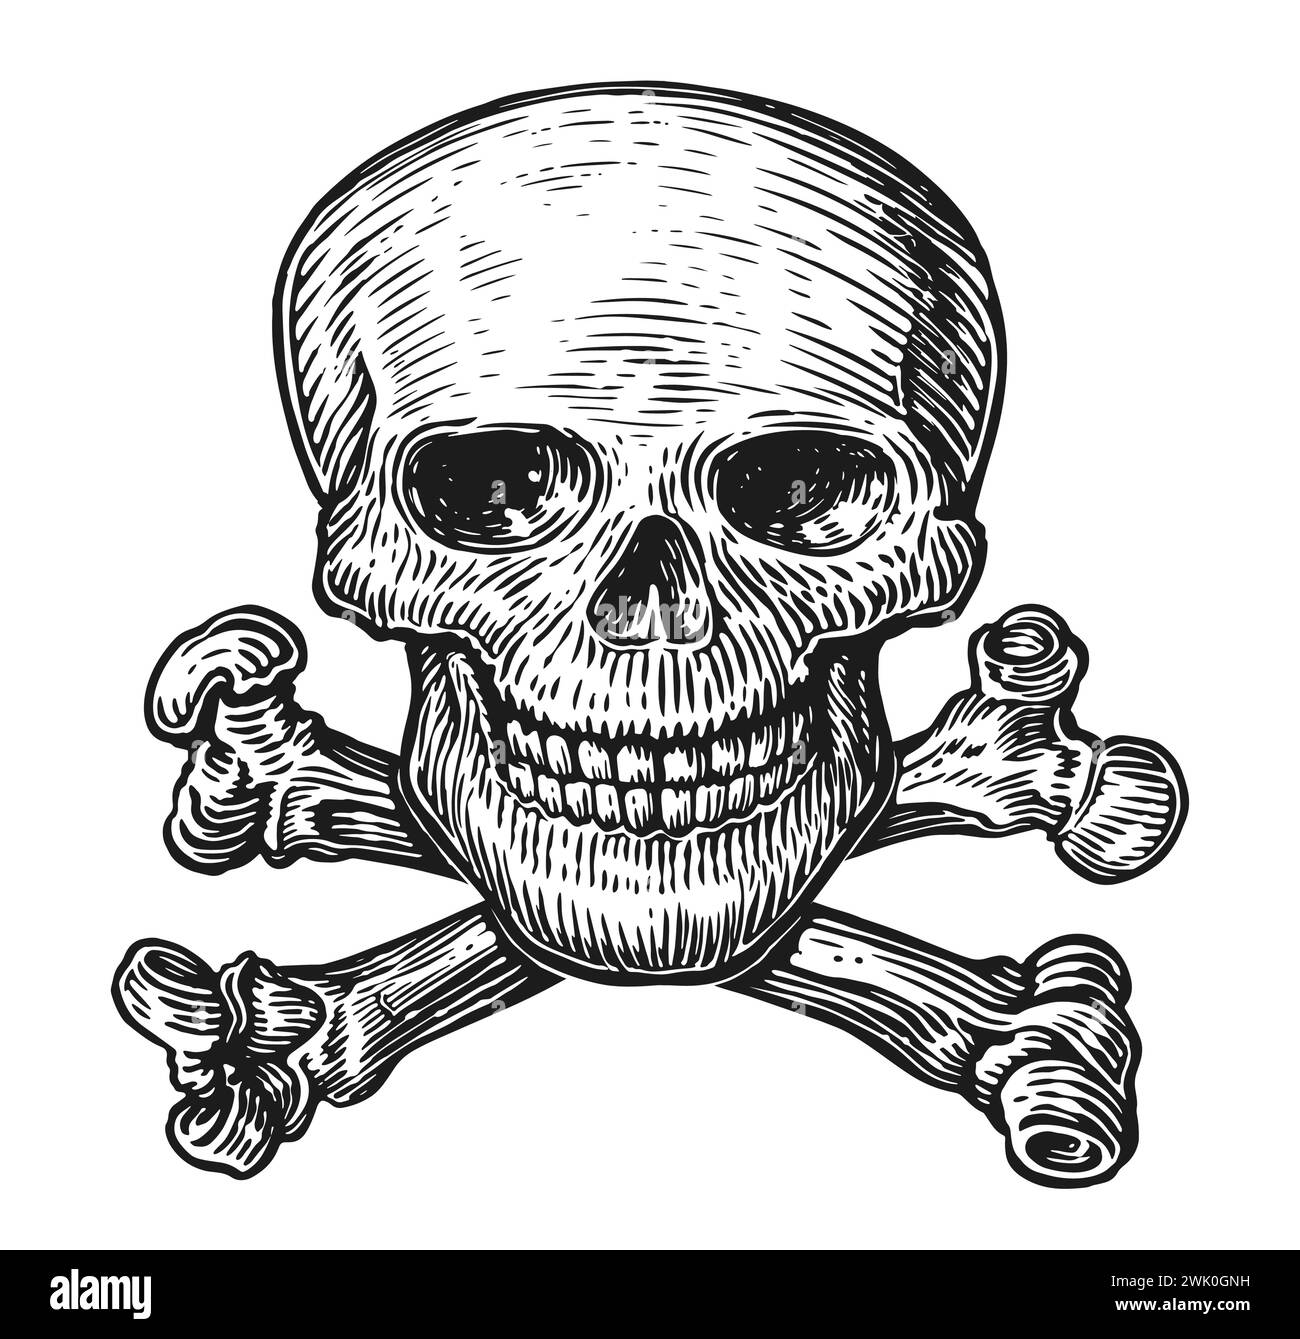 Cranio umano con ossa incrociate. Bianco e nero, illustrazione vettoriale isolata su sfondo bianco Illustrazione Vettoriale